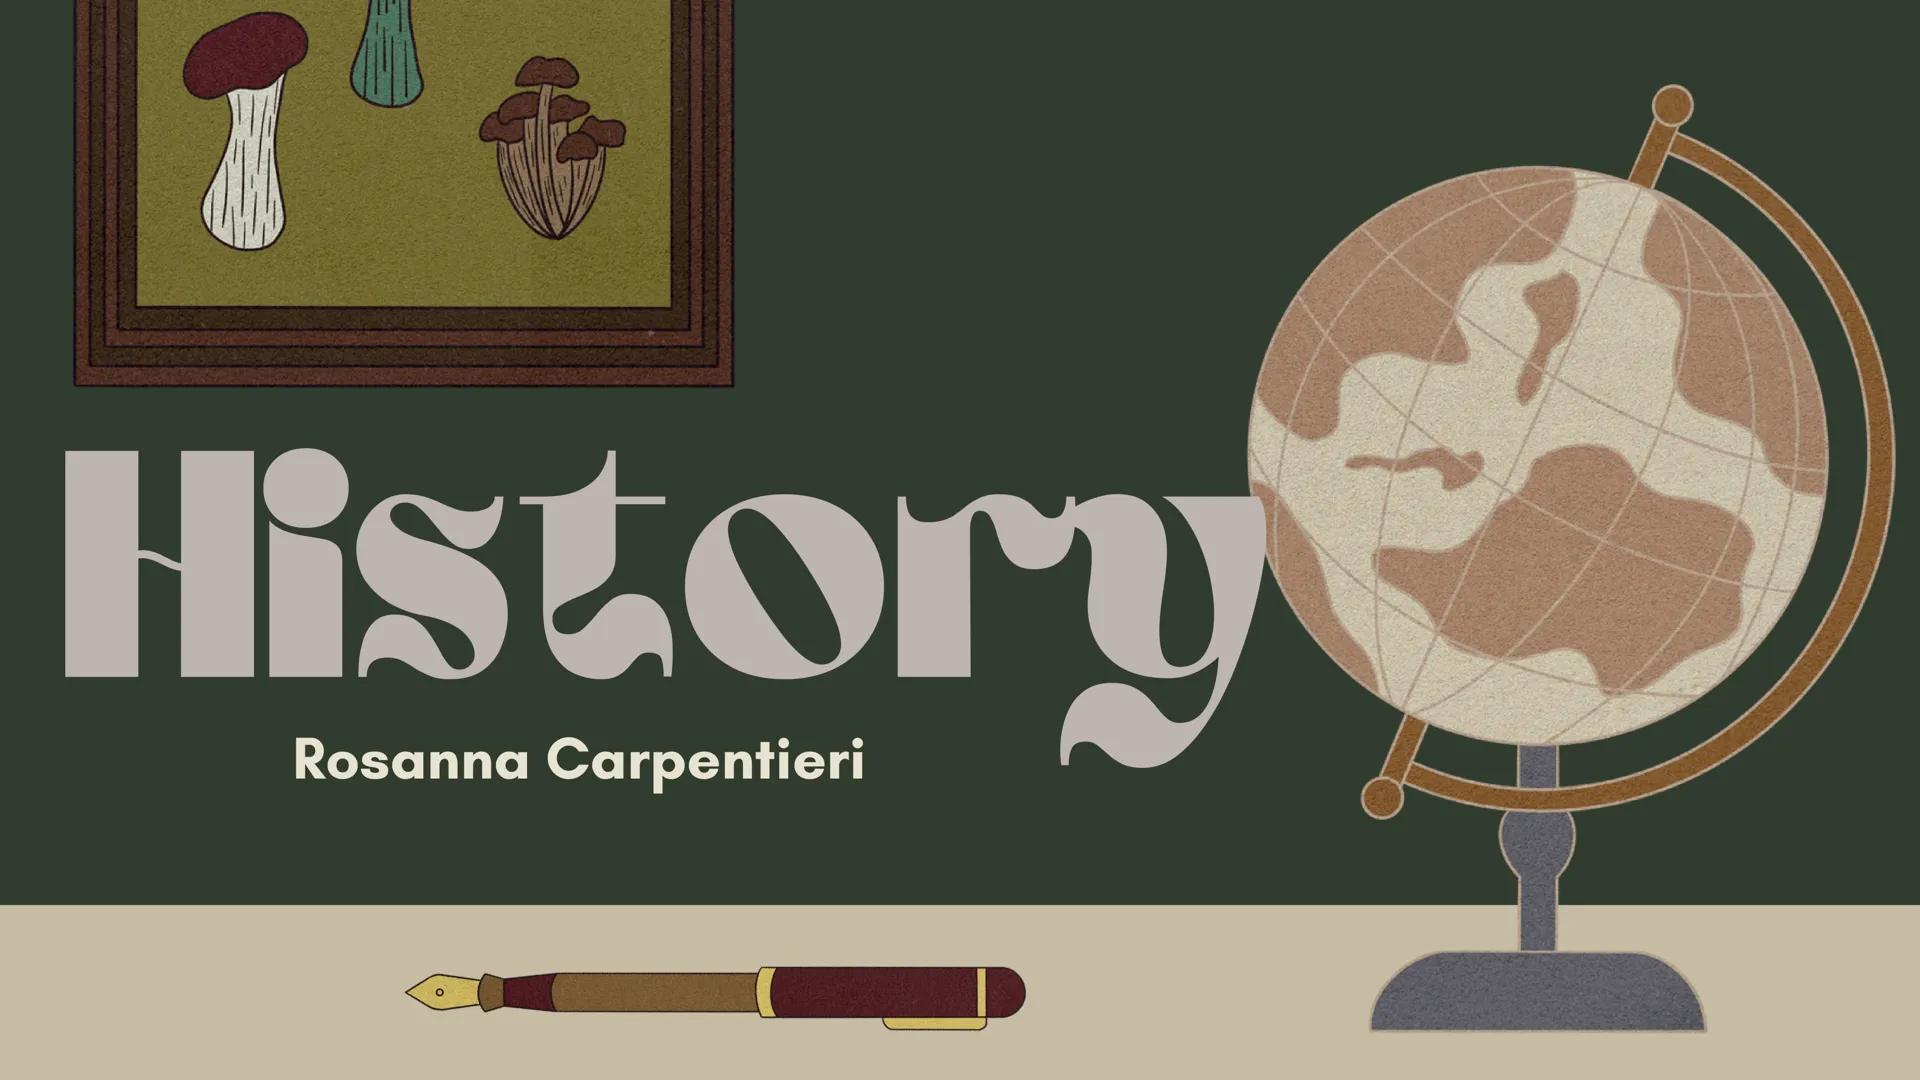 History
Rosanna Carpentieri
- L'illuminismo
E un importante movimento
letterario che si sviluppa Non
solo in Europa ma anche oltre
oceano. A